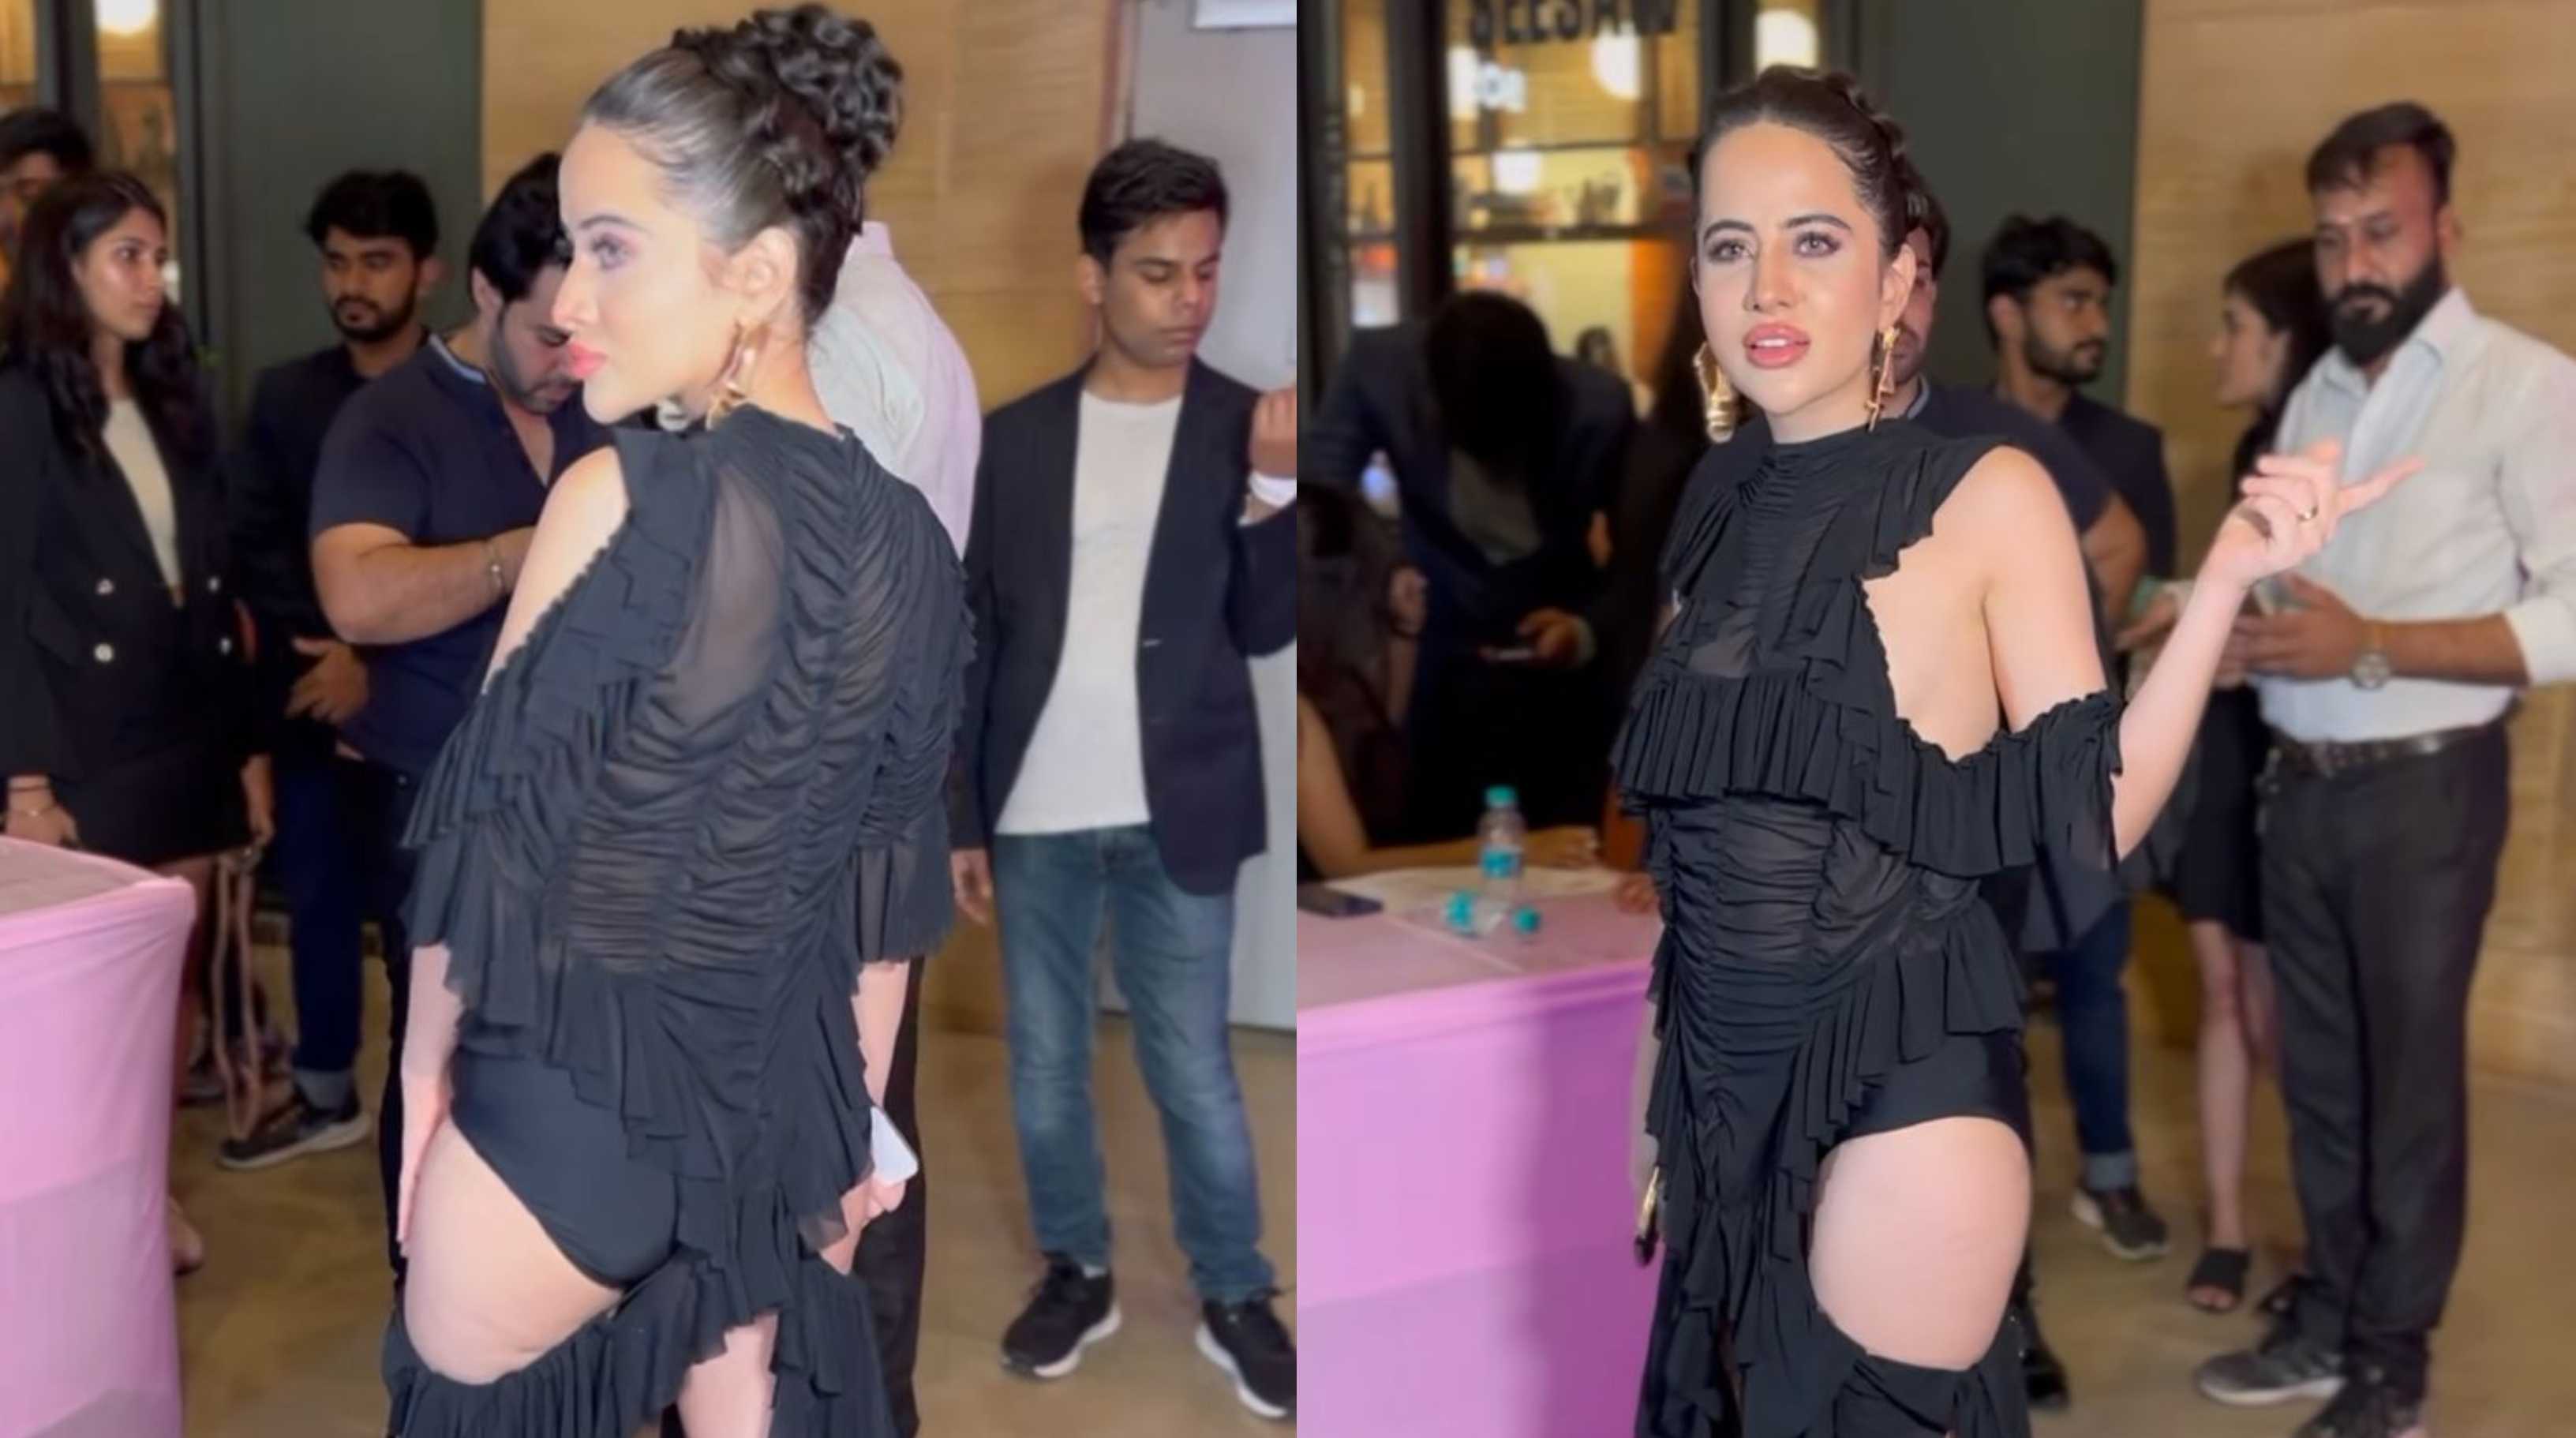 ‘Ye akeli hii Cannes Cannes khelti rehti hai’: Uorfi Javed’s dangerously cut-out little black dress receives flak